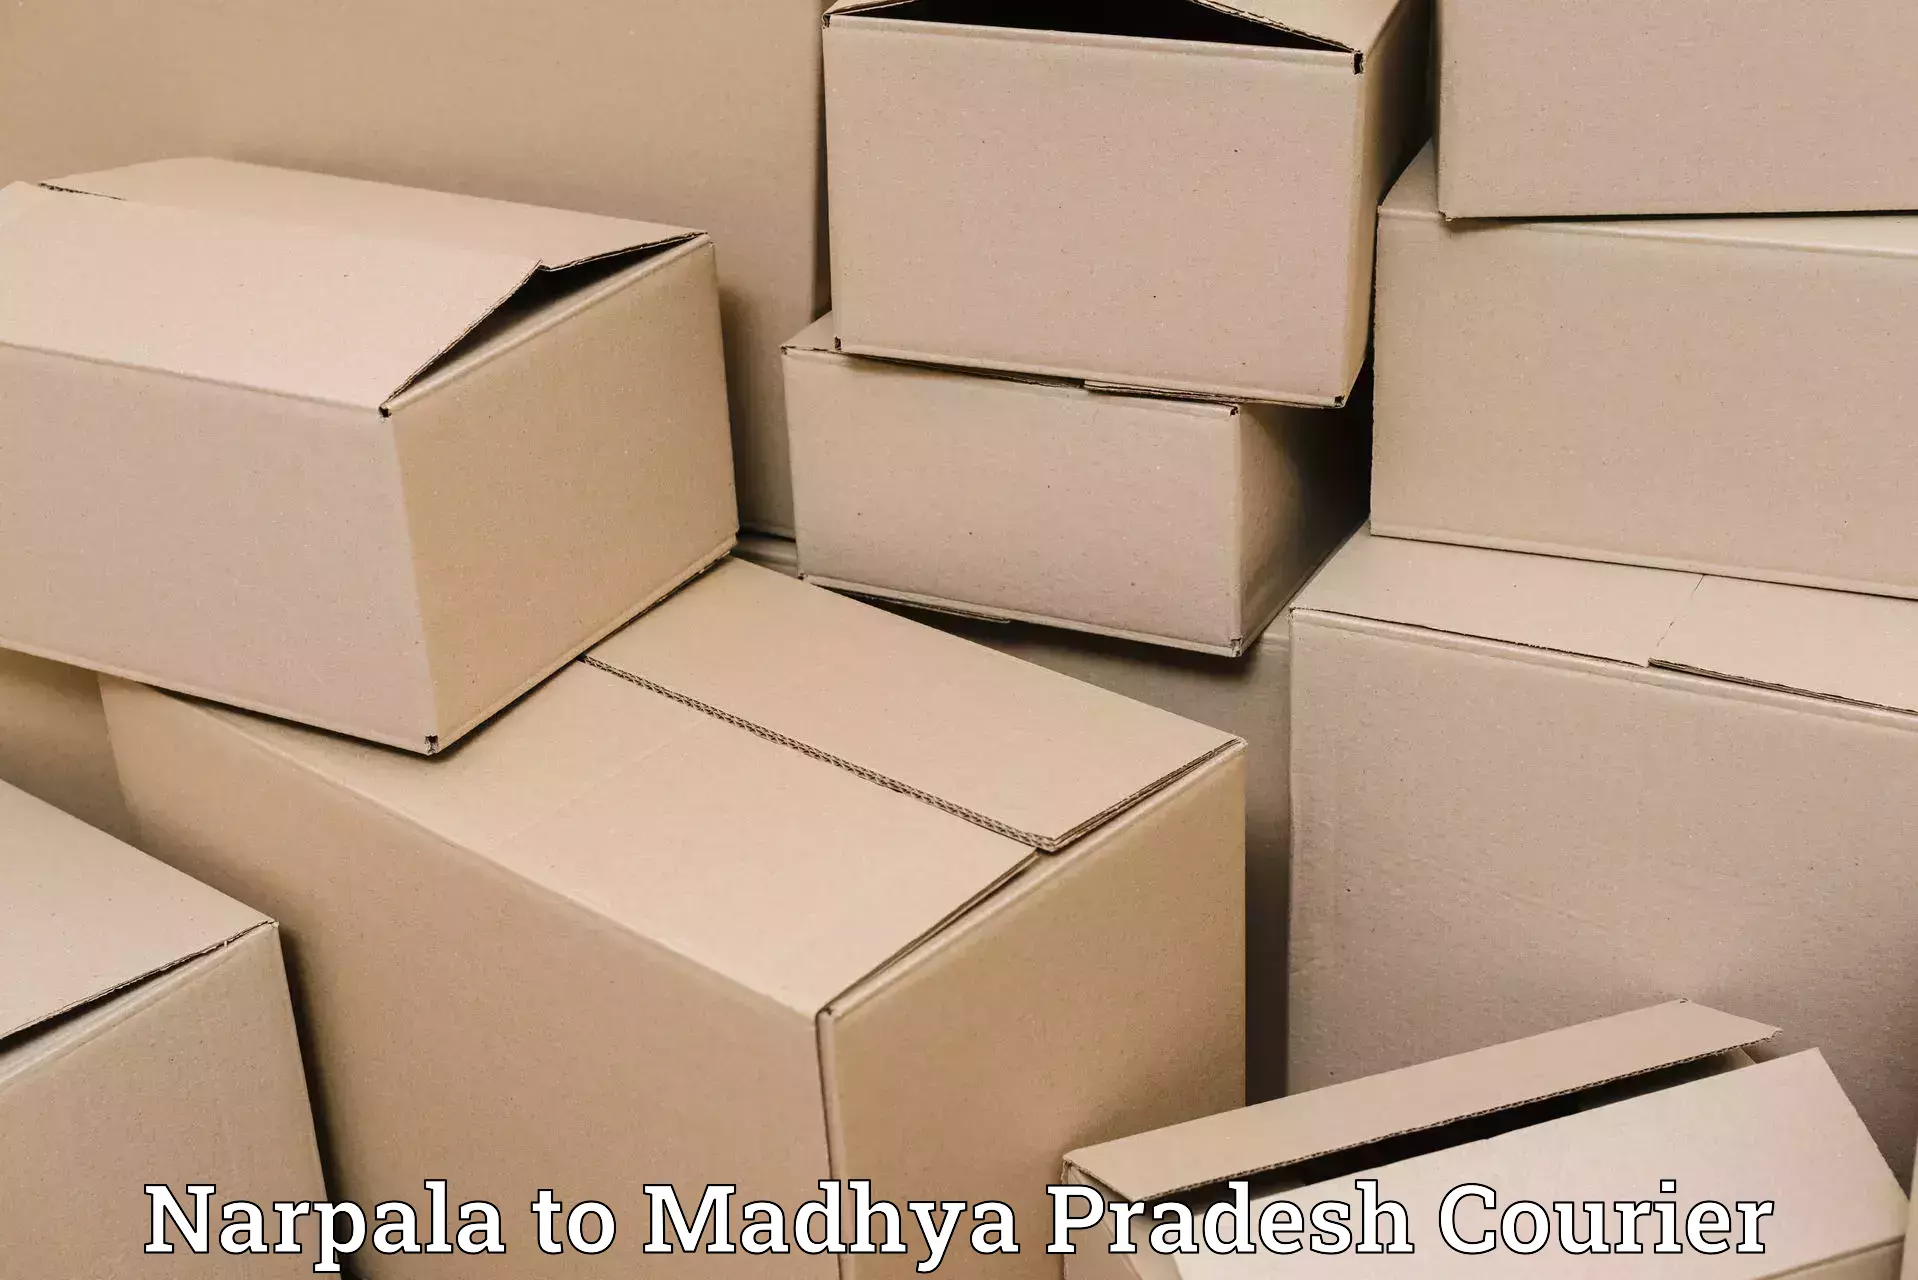 Comprehensive parcel tracking Narpala to Rajendragram